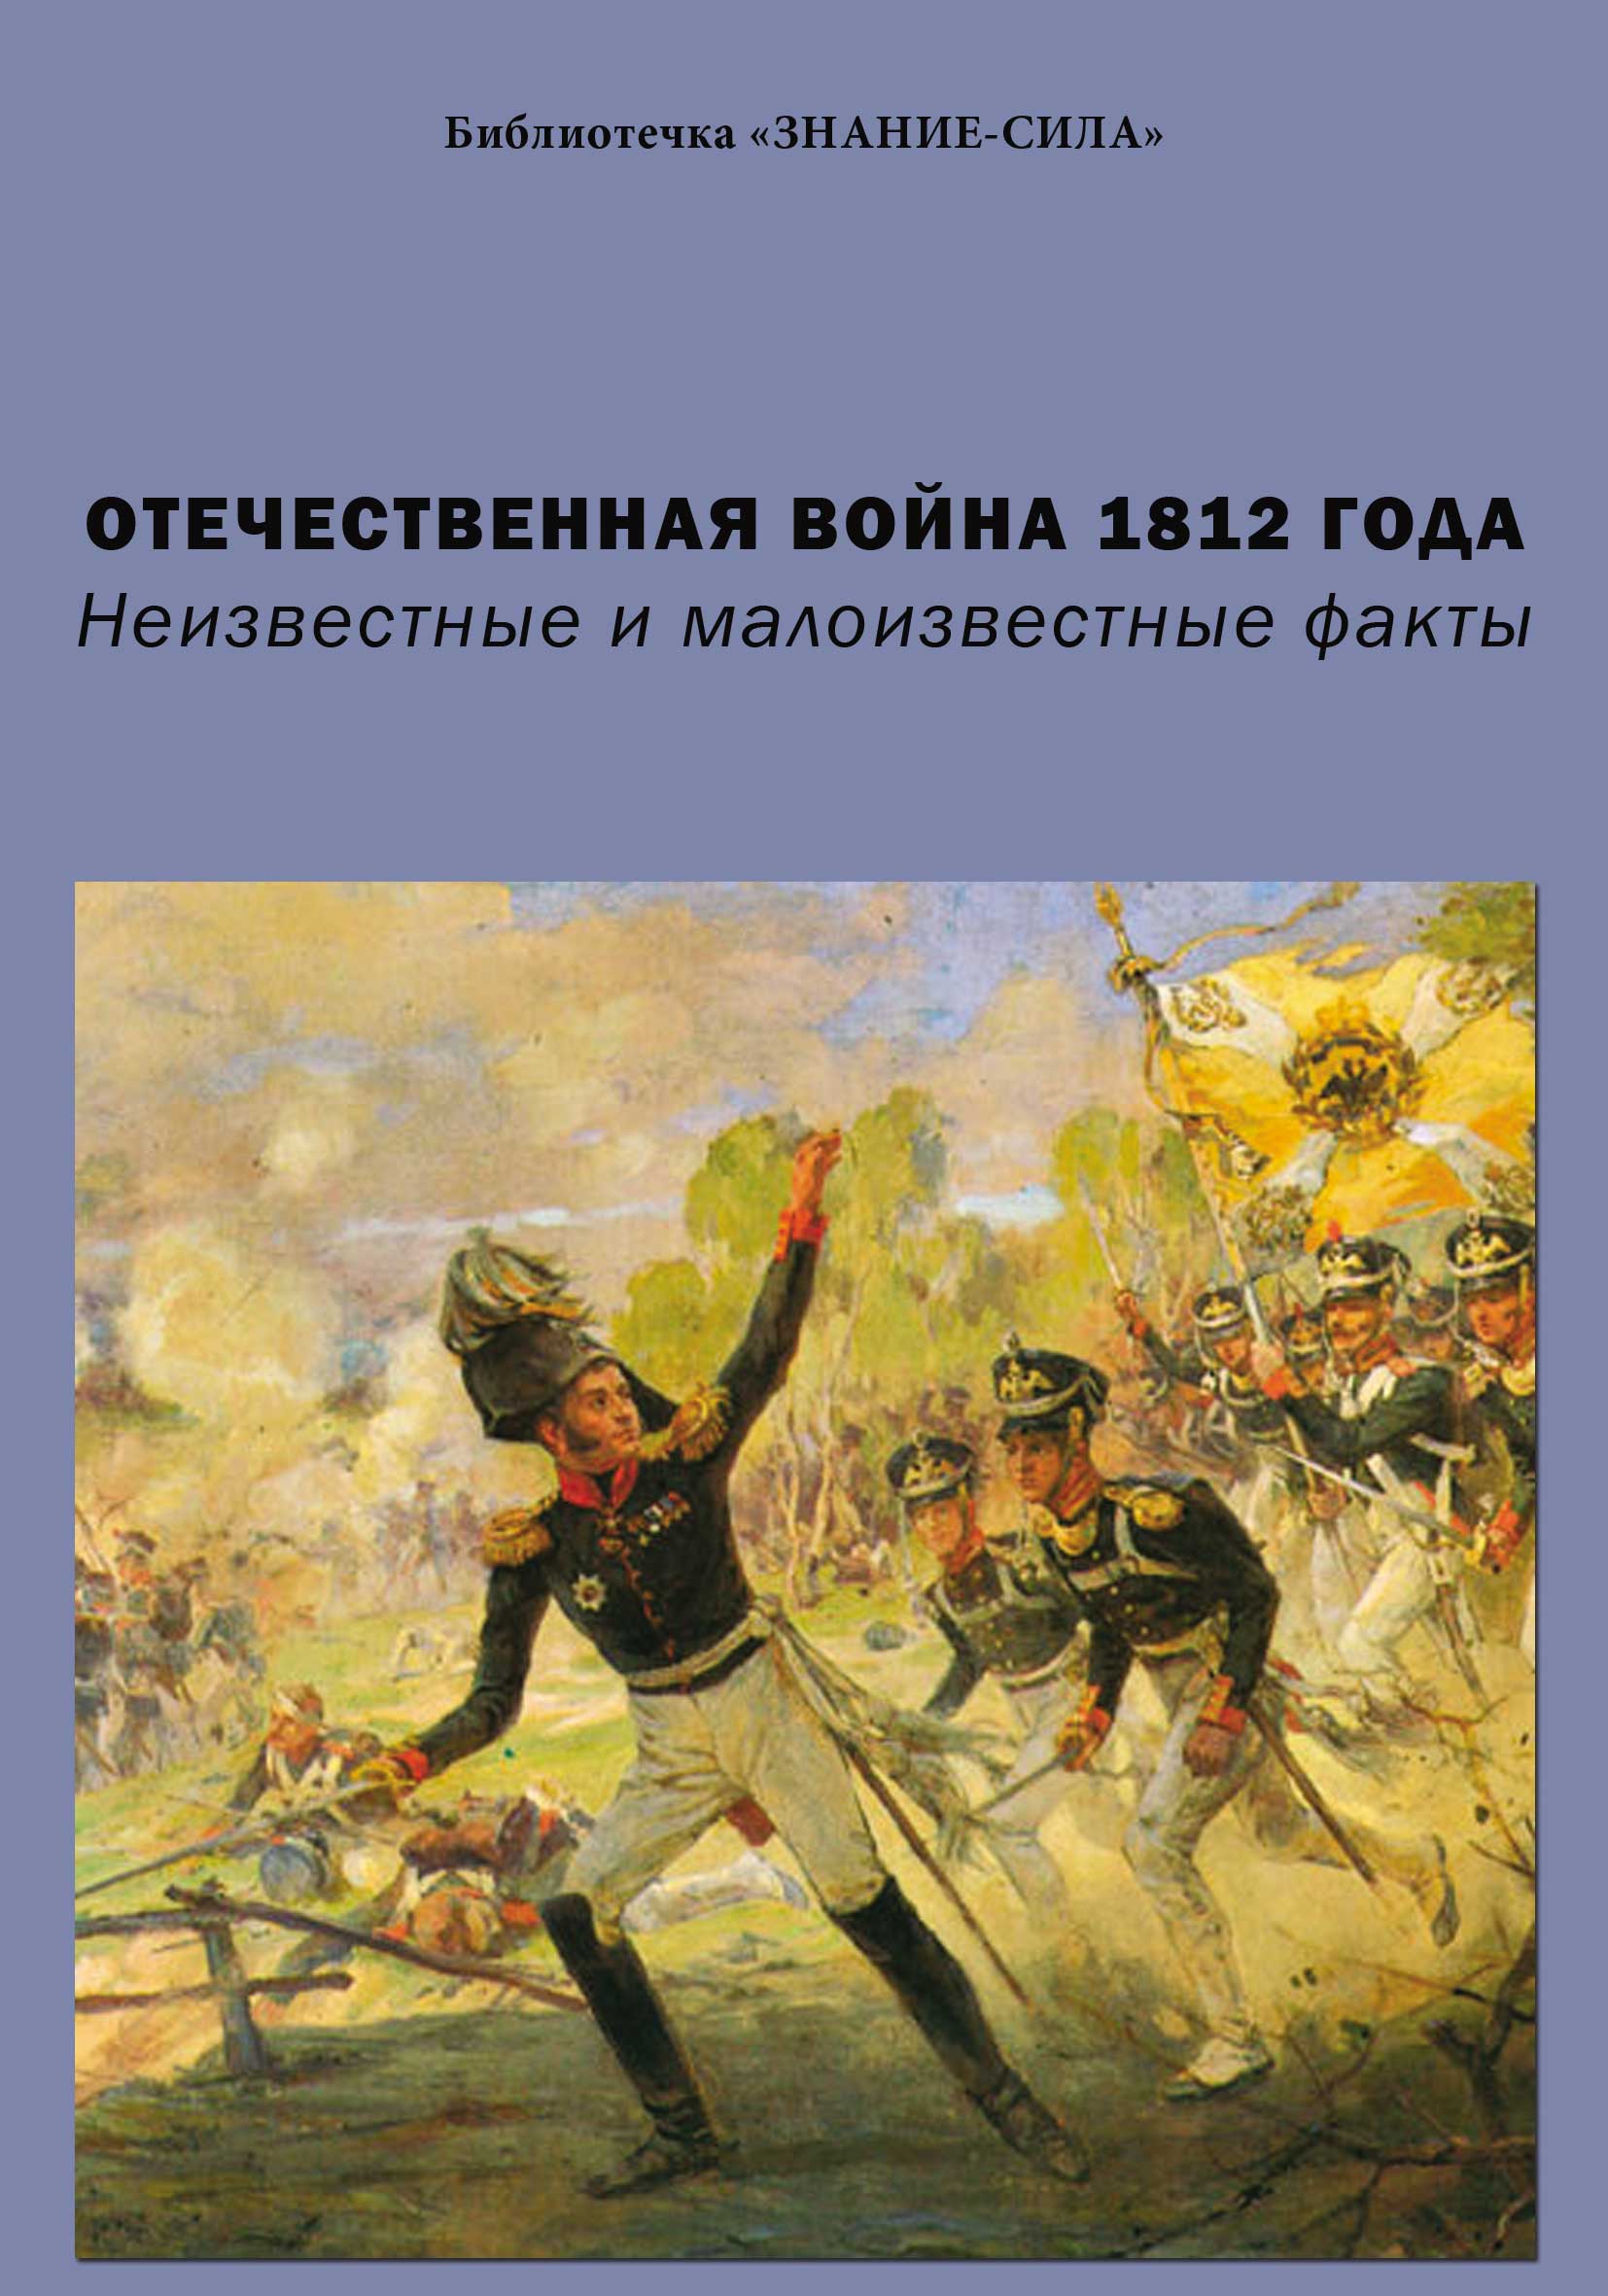 Отечественная война 1812 года книга скачать бесплатно